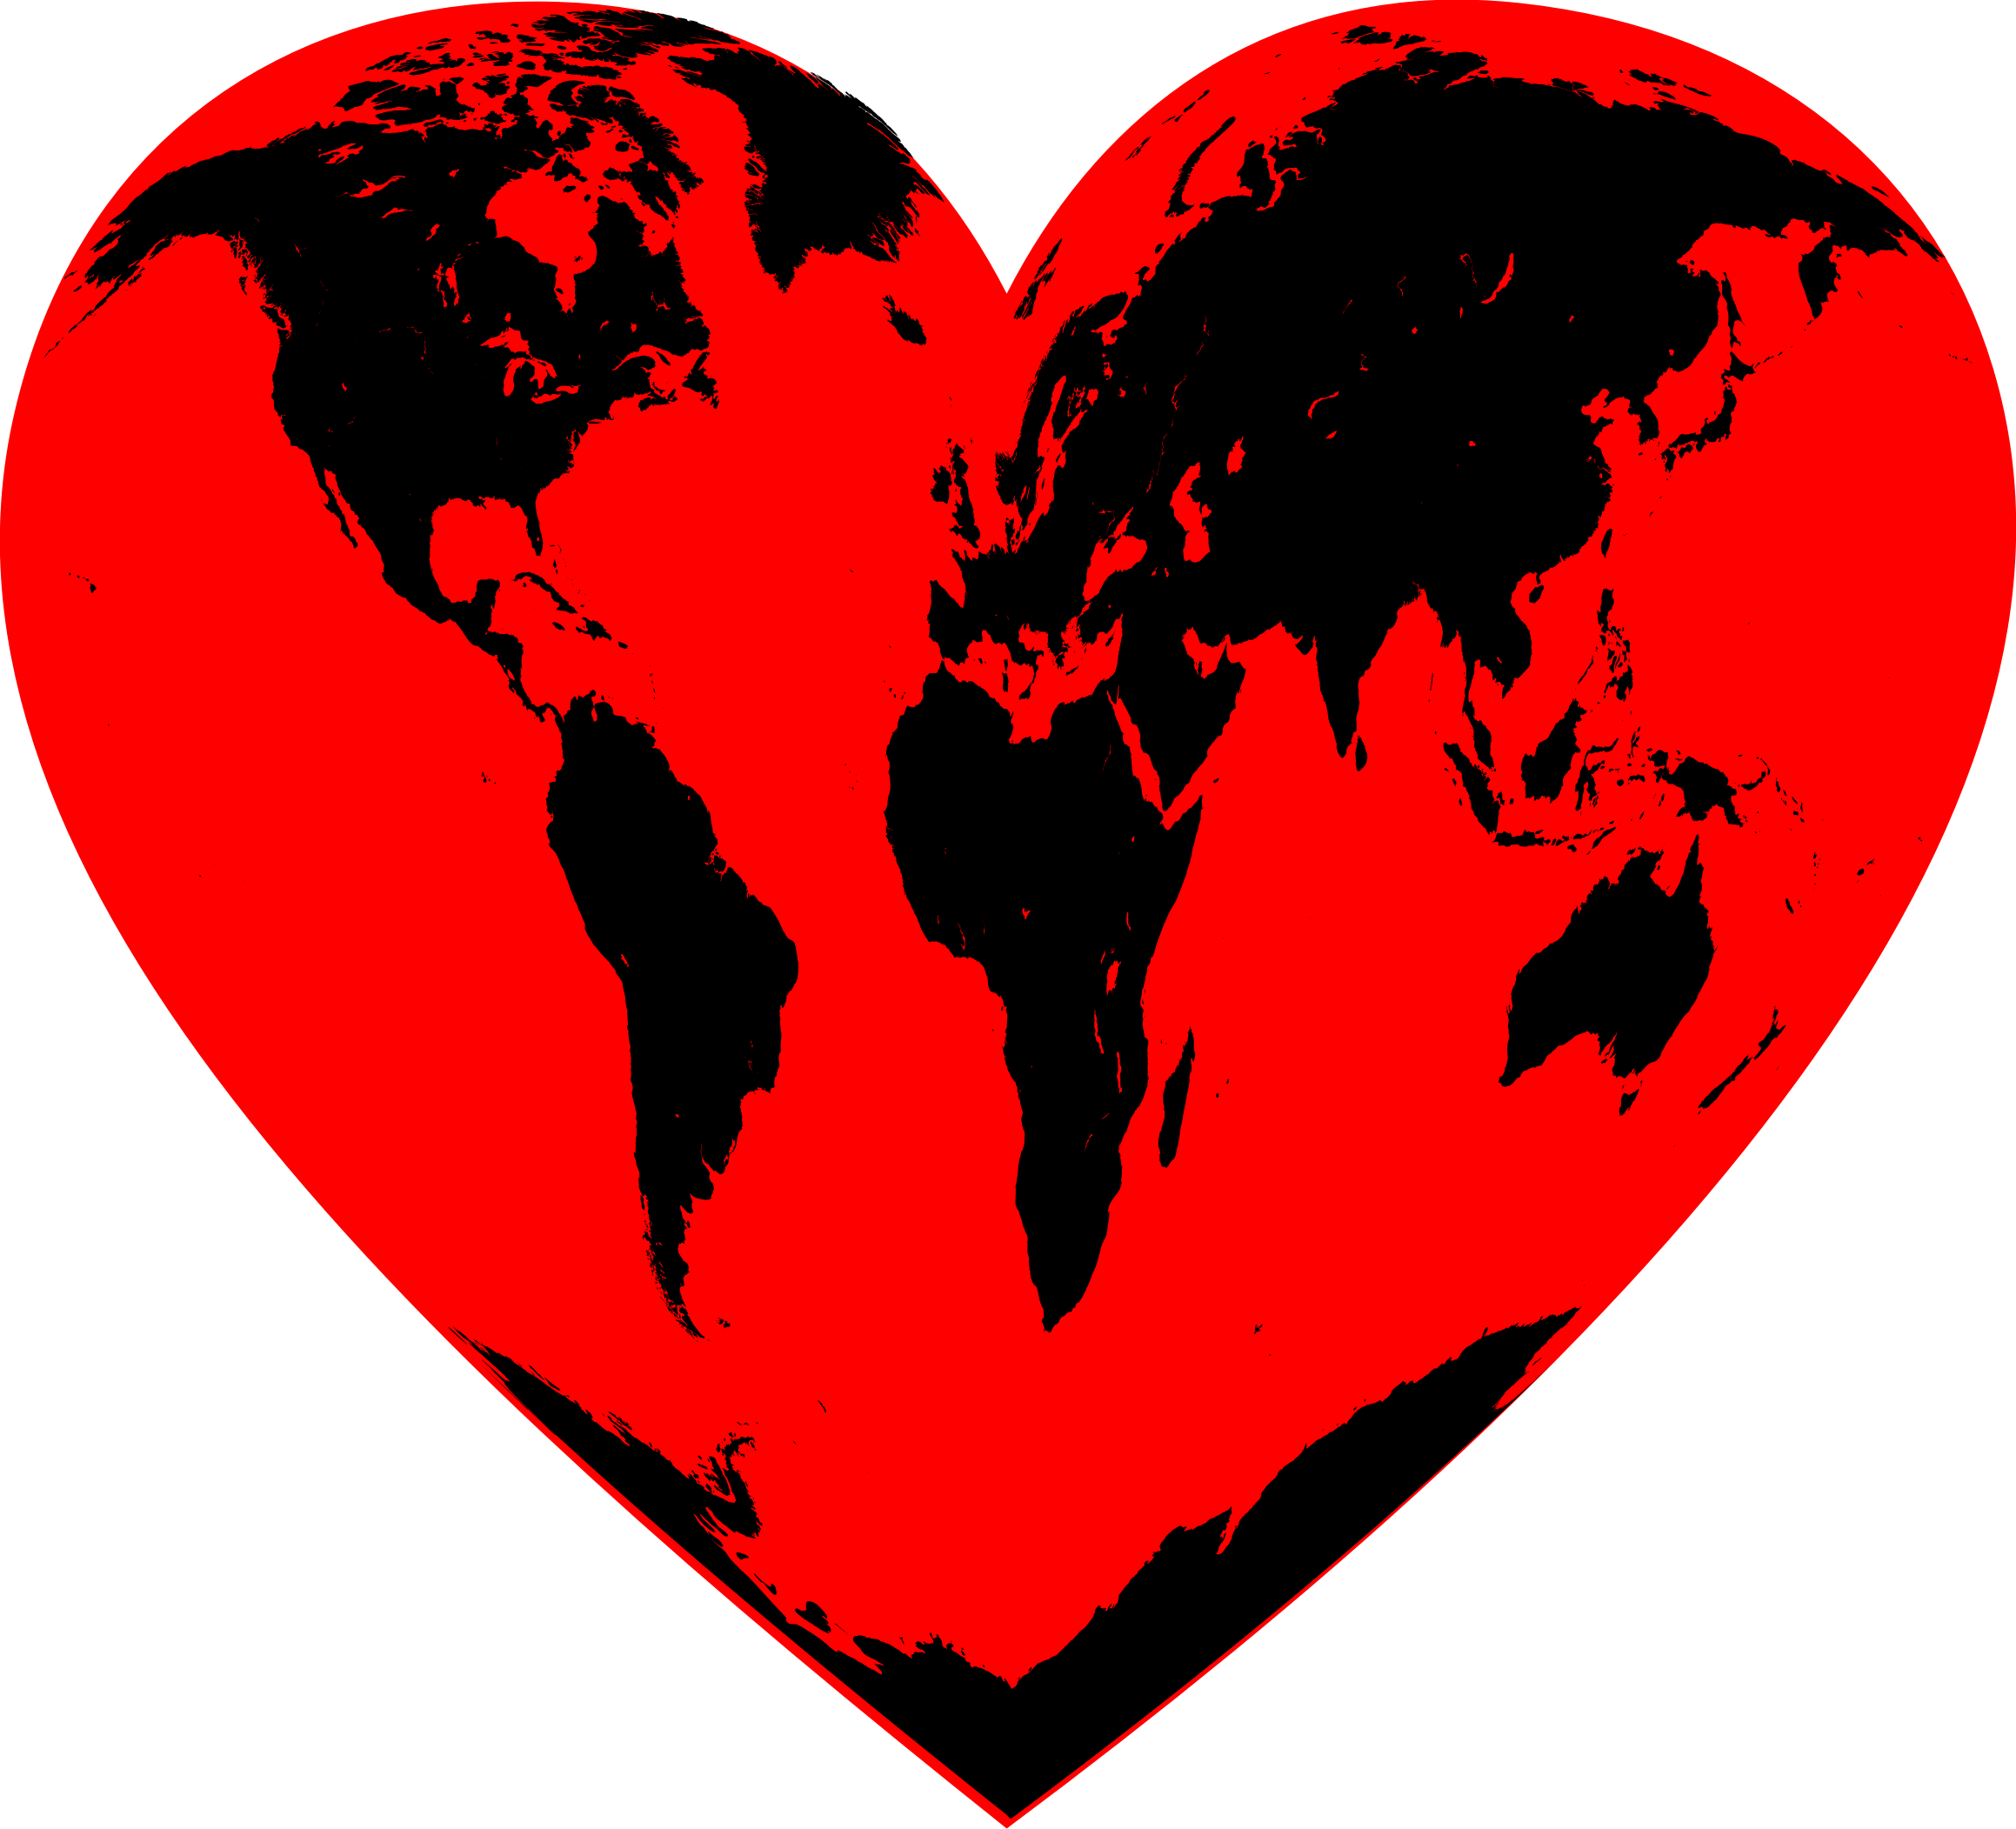 The world is heart. Земля сердечко. Планета сердце. Мир сердечко. Планета с сердечком.